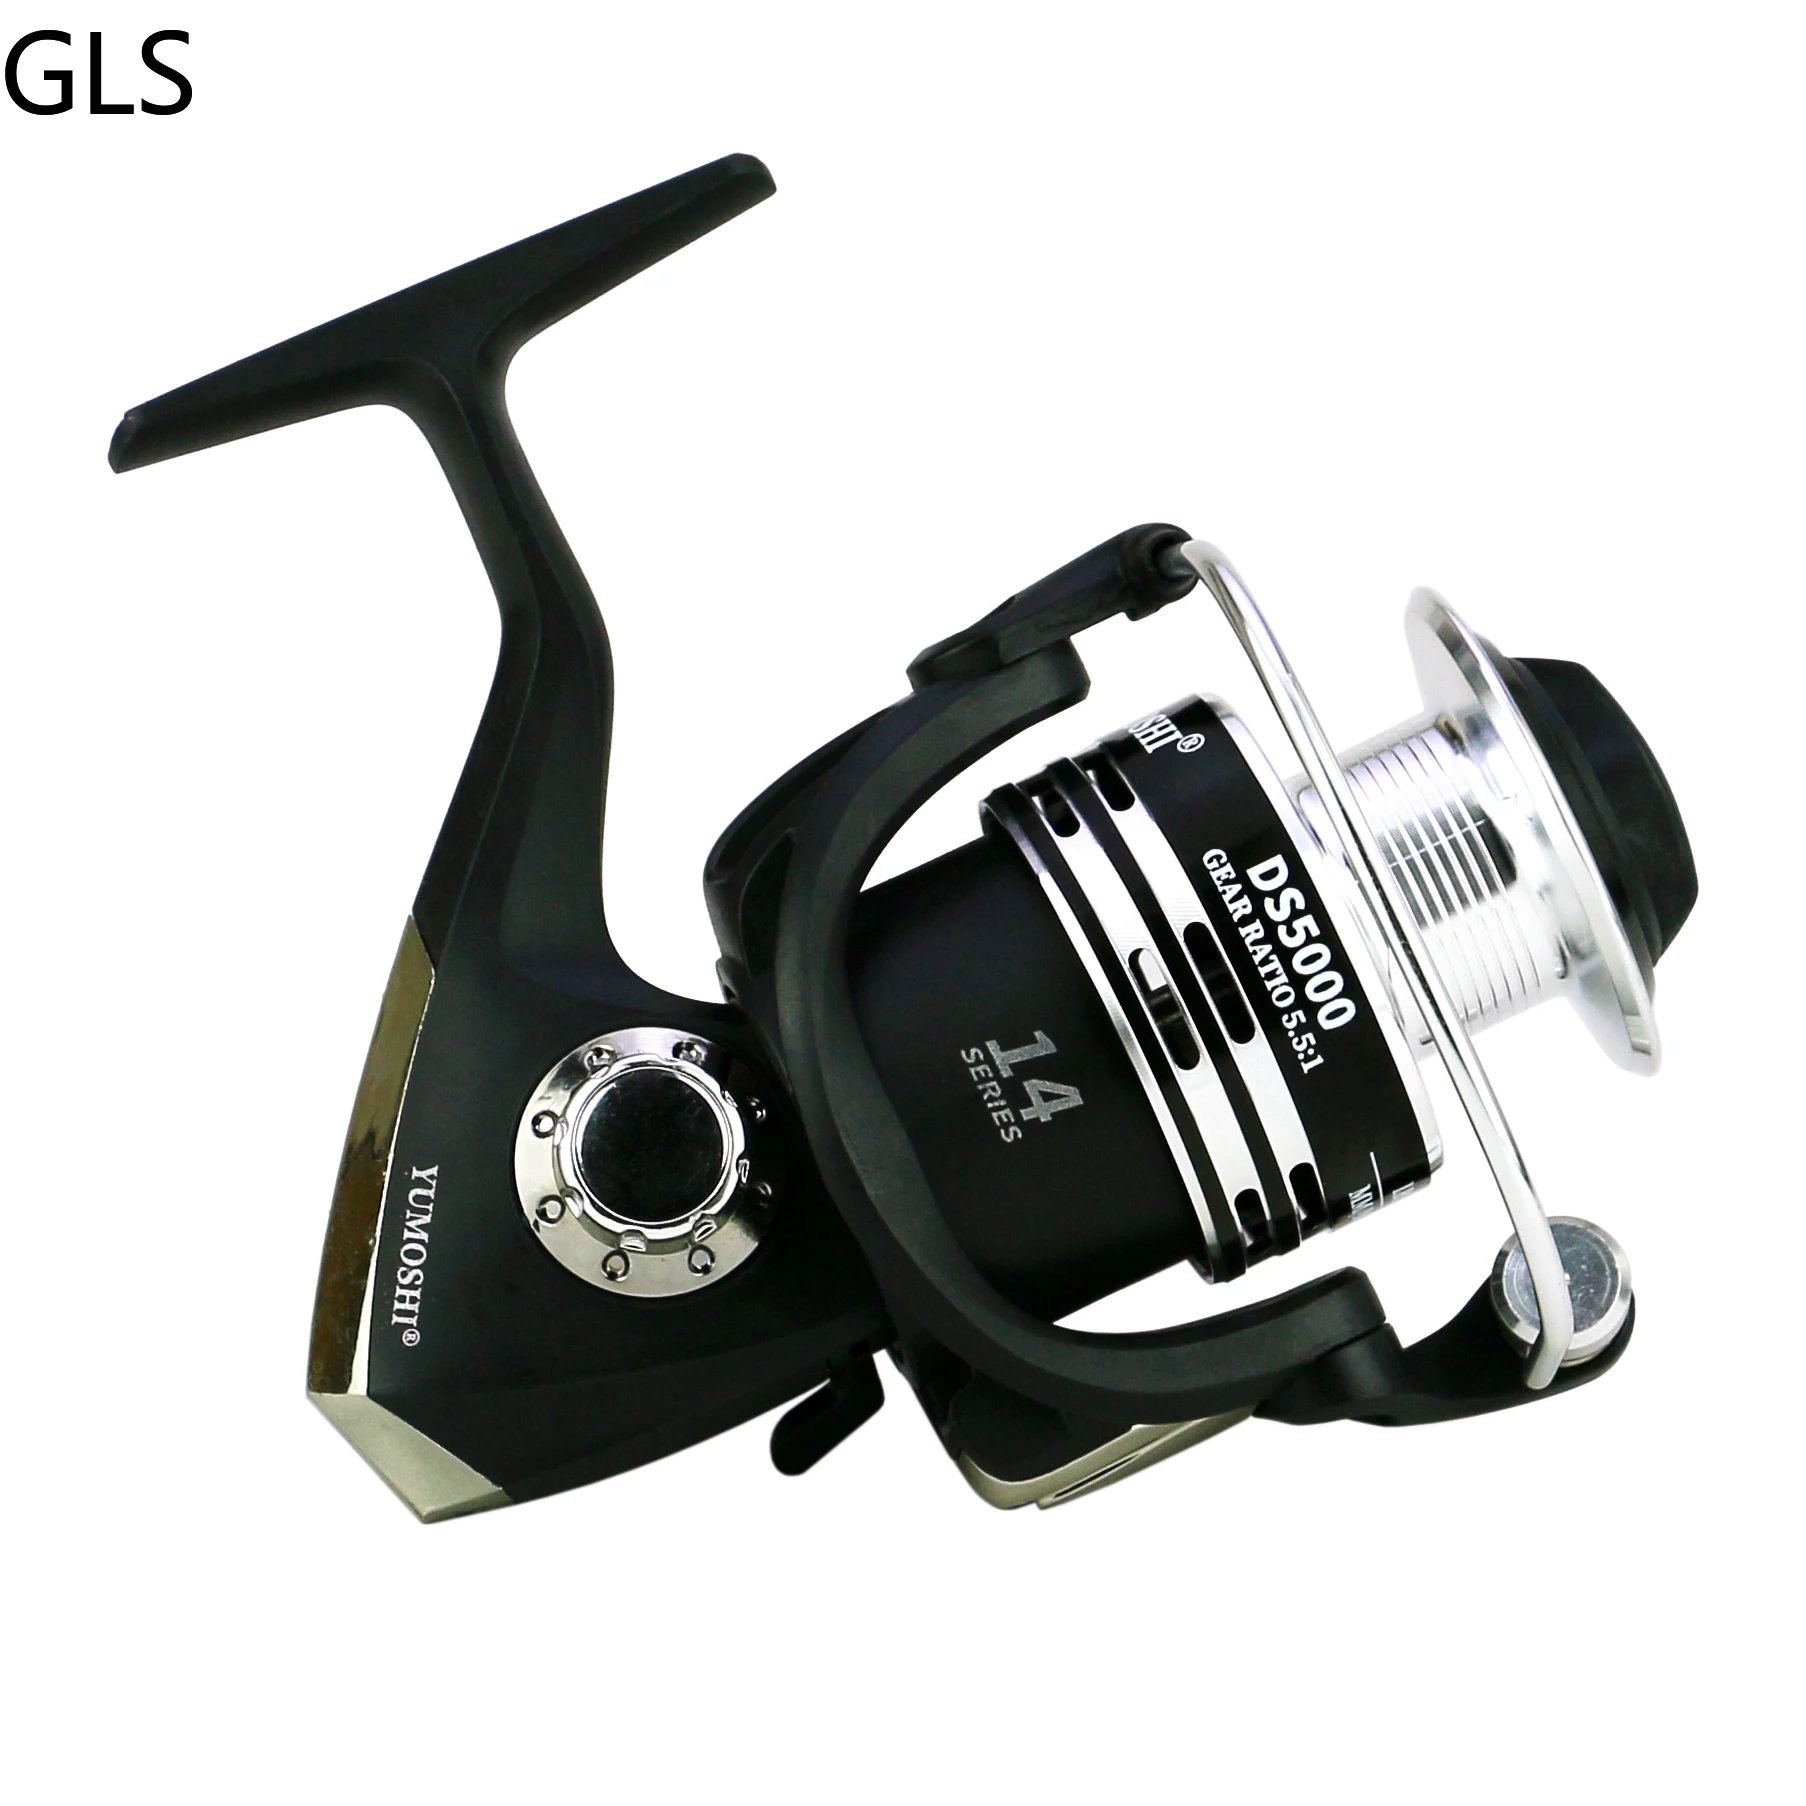 GLS New DS 1000-7000 Series Wear Resistant Metal Spool Spinning Fishing Reel Gear Ratio 5.5:1 High Speed Fishing Wheel enlarge